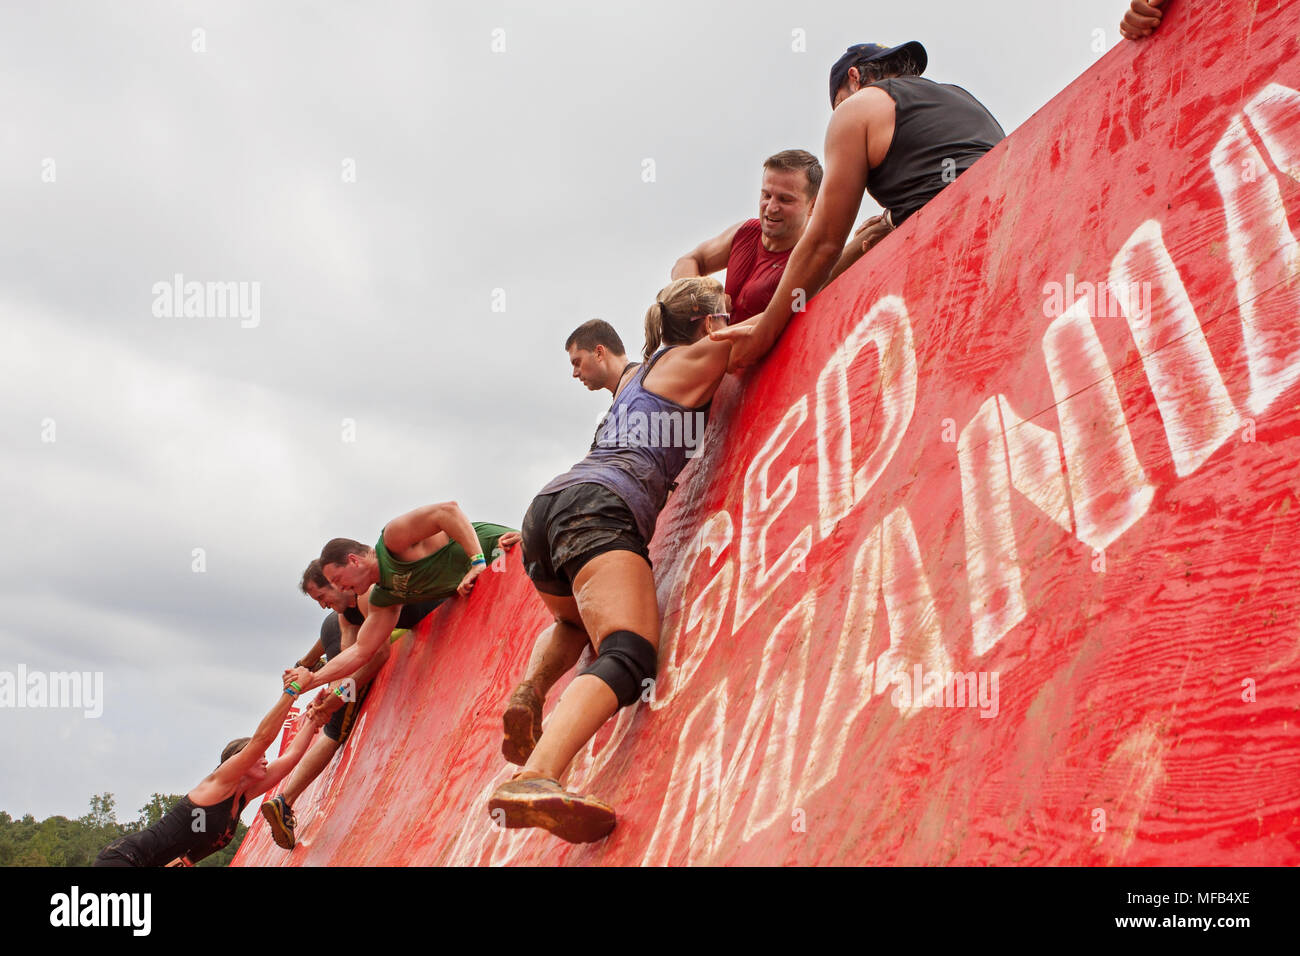 Les concurrents de la difficulté à grimper en haut d'un mur un peu l'aide des autres participants à l'événement robuste Maniac le 22 août 2015 à Conyers, GA. Banque D'Images